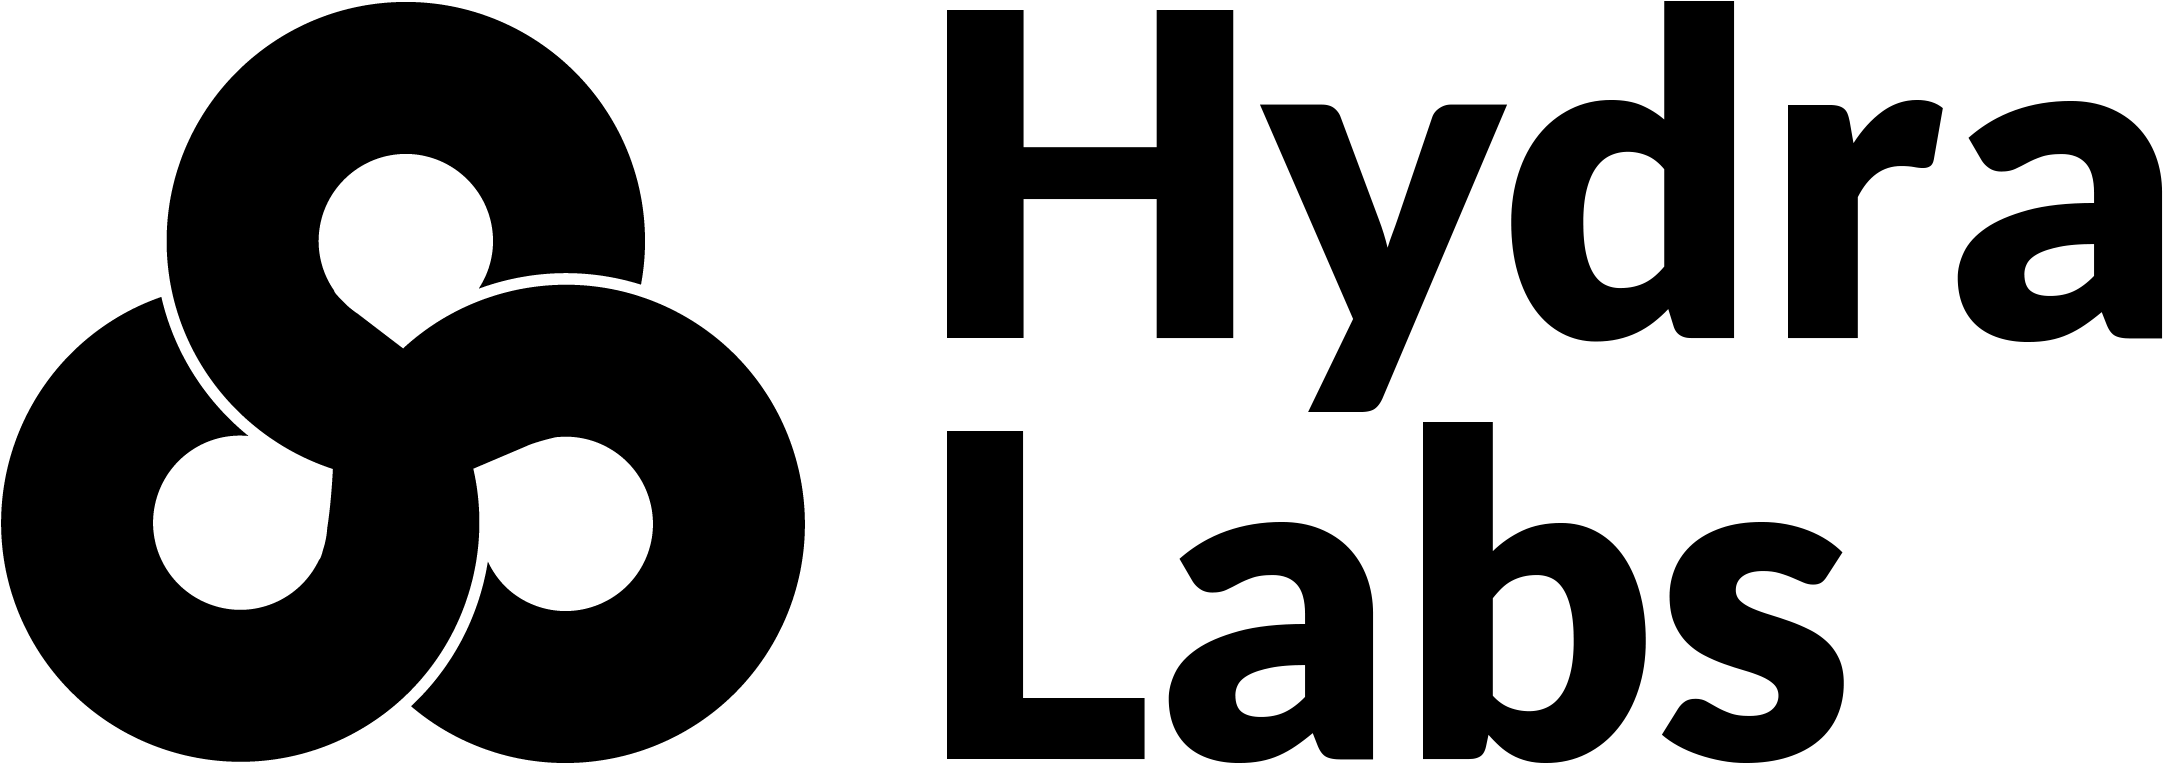 Marvel hydra logotipo imagem de alta qualidade PNG